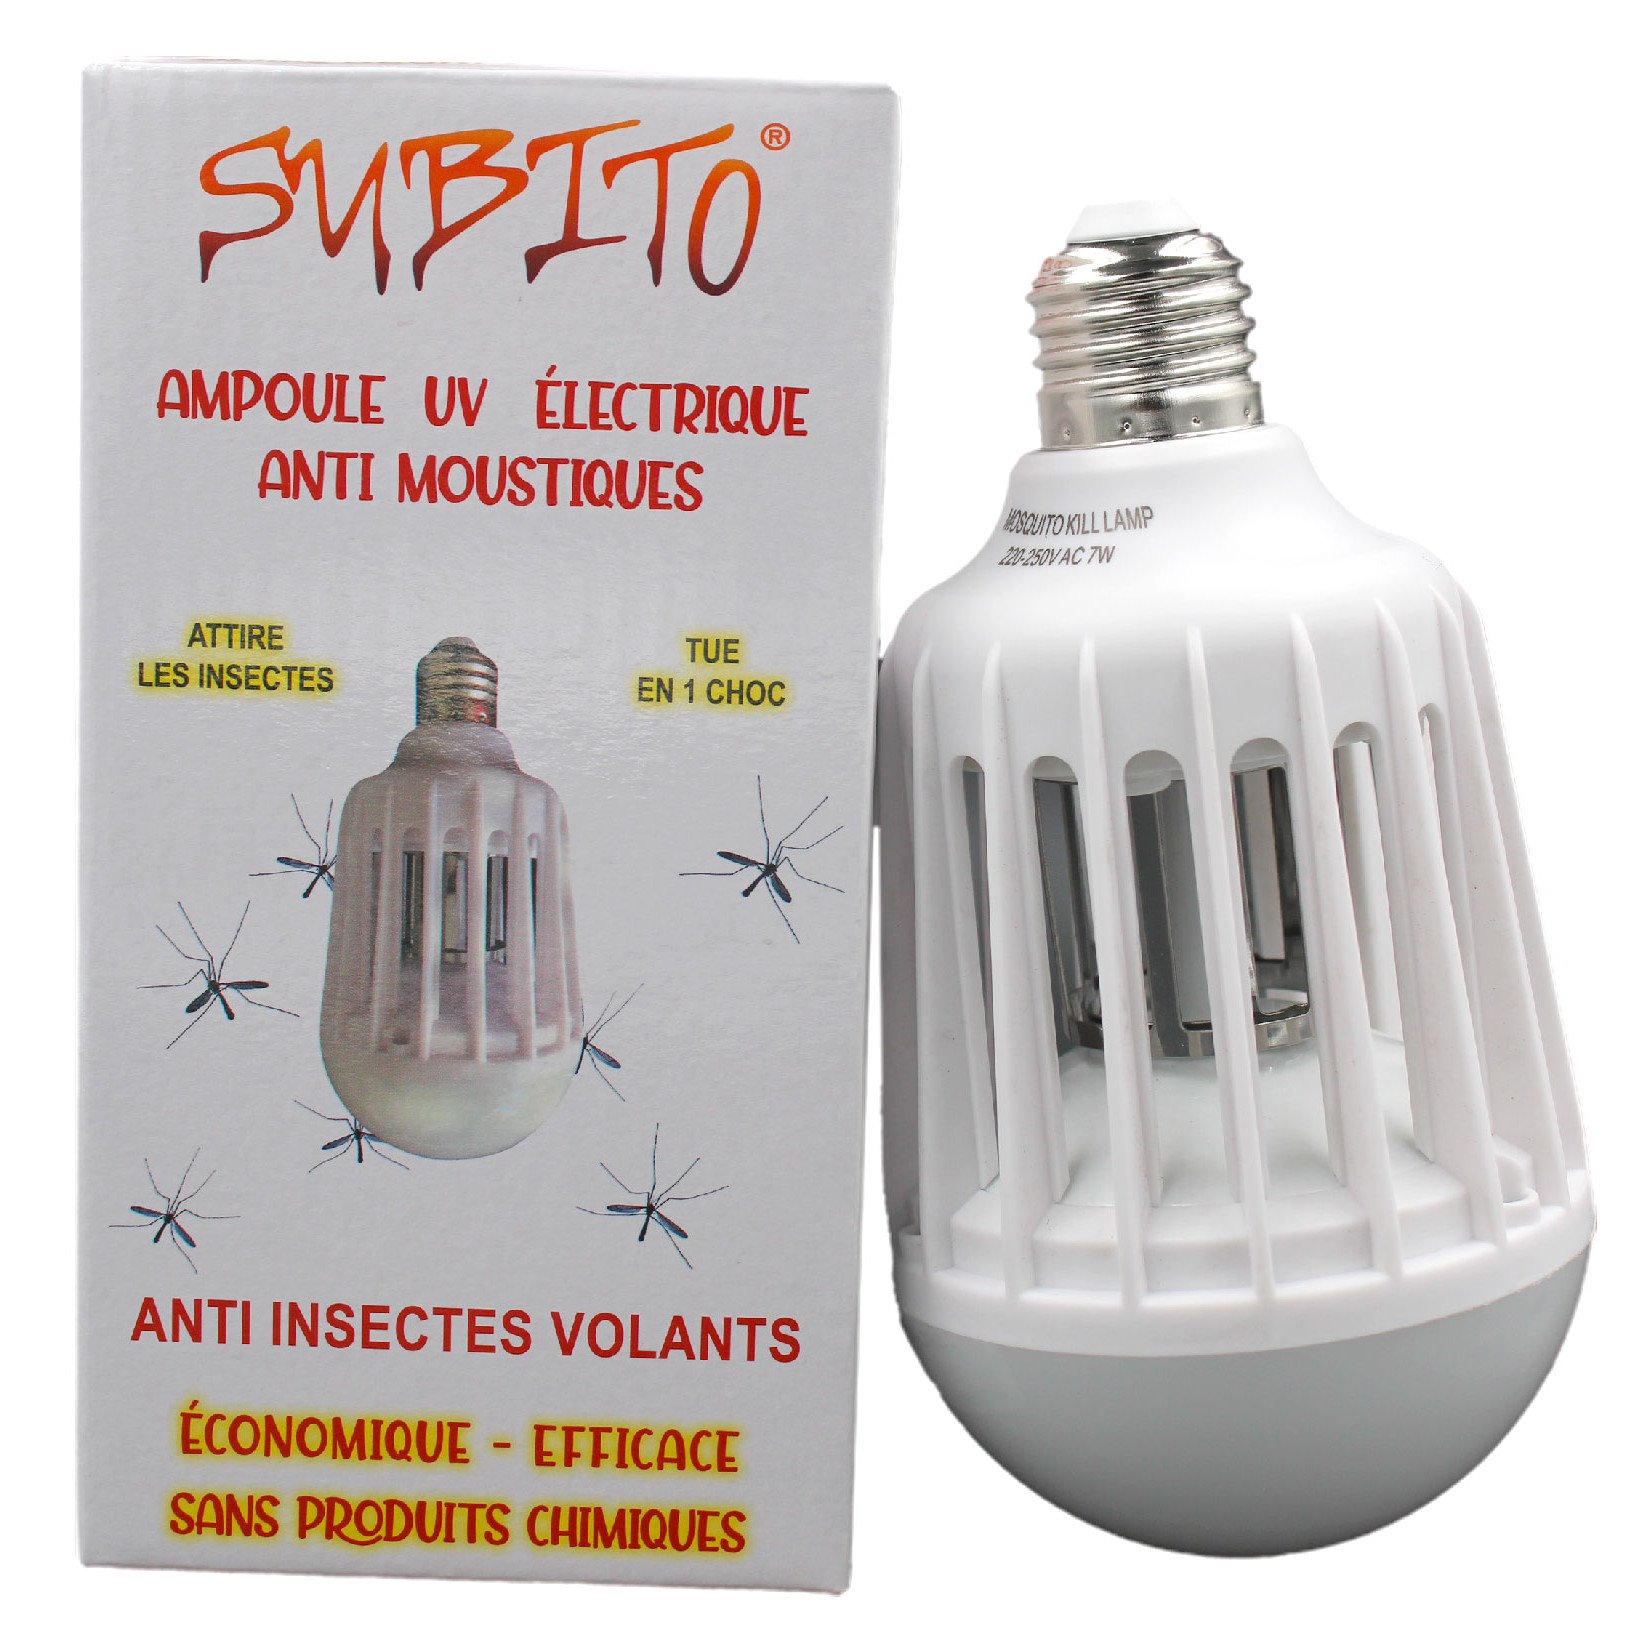 Ampoule électrique UltraViolet LED anti-insectes volants de Subito | Insecticide Antinuisible Qualité Professionnelle